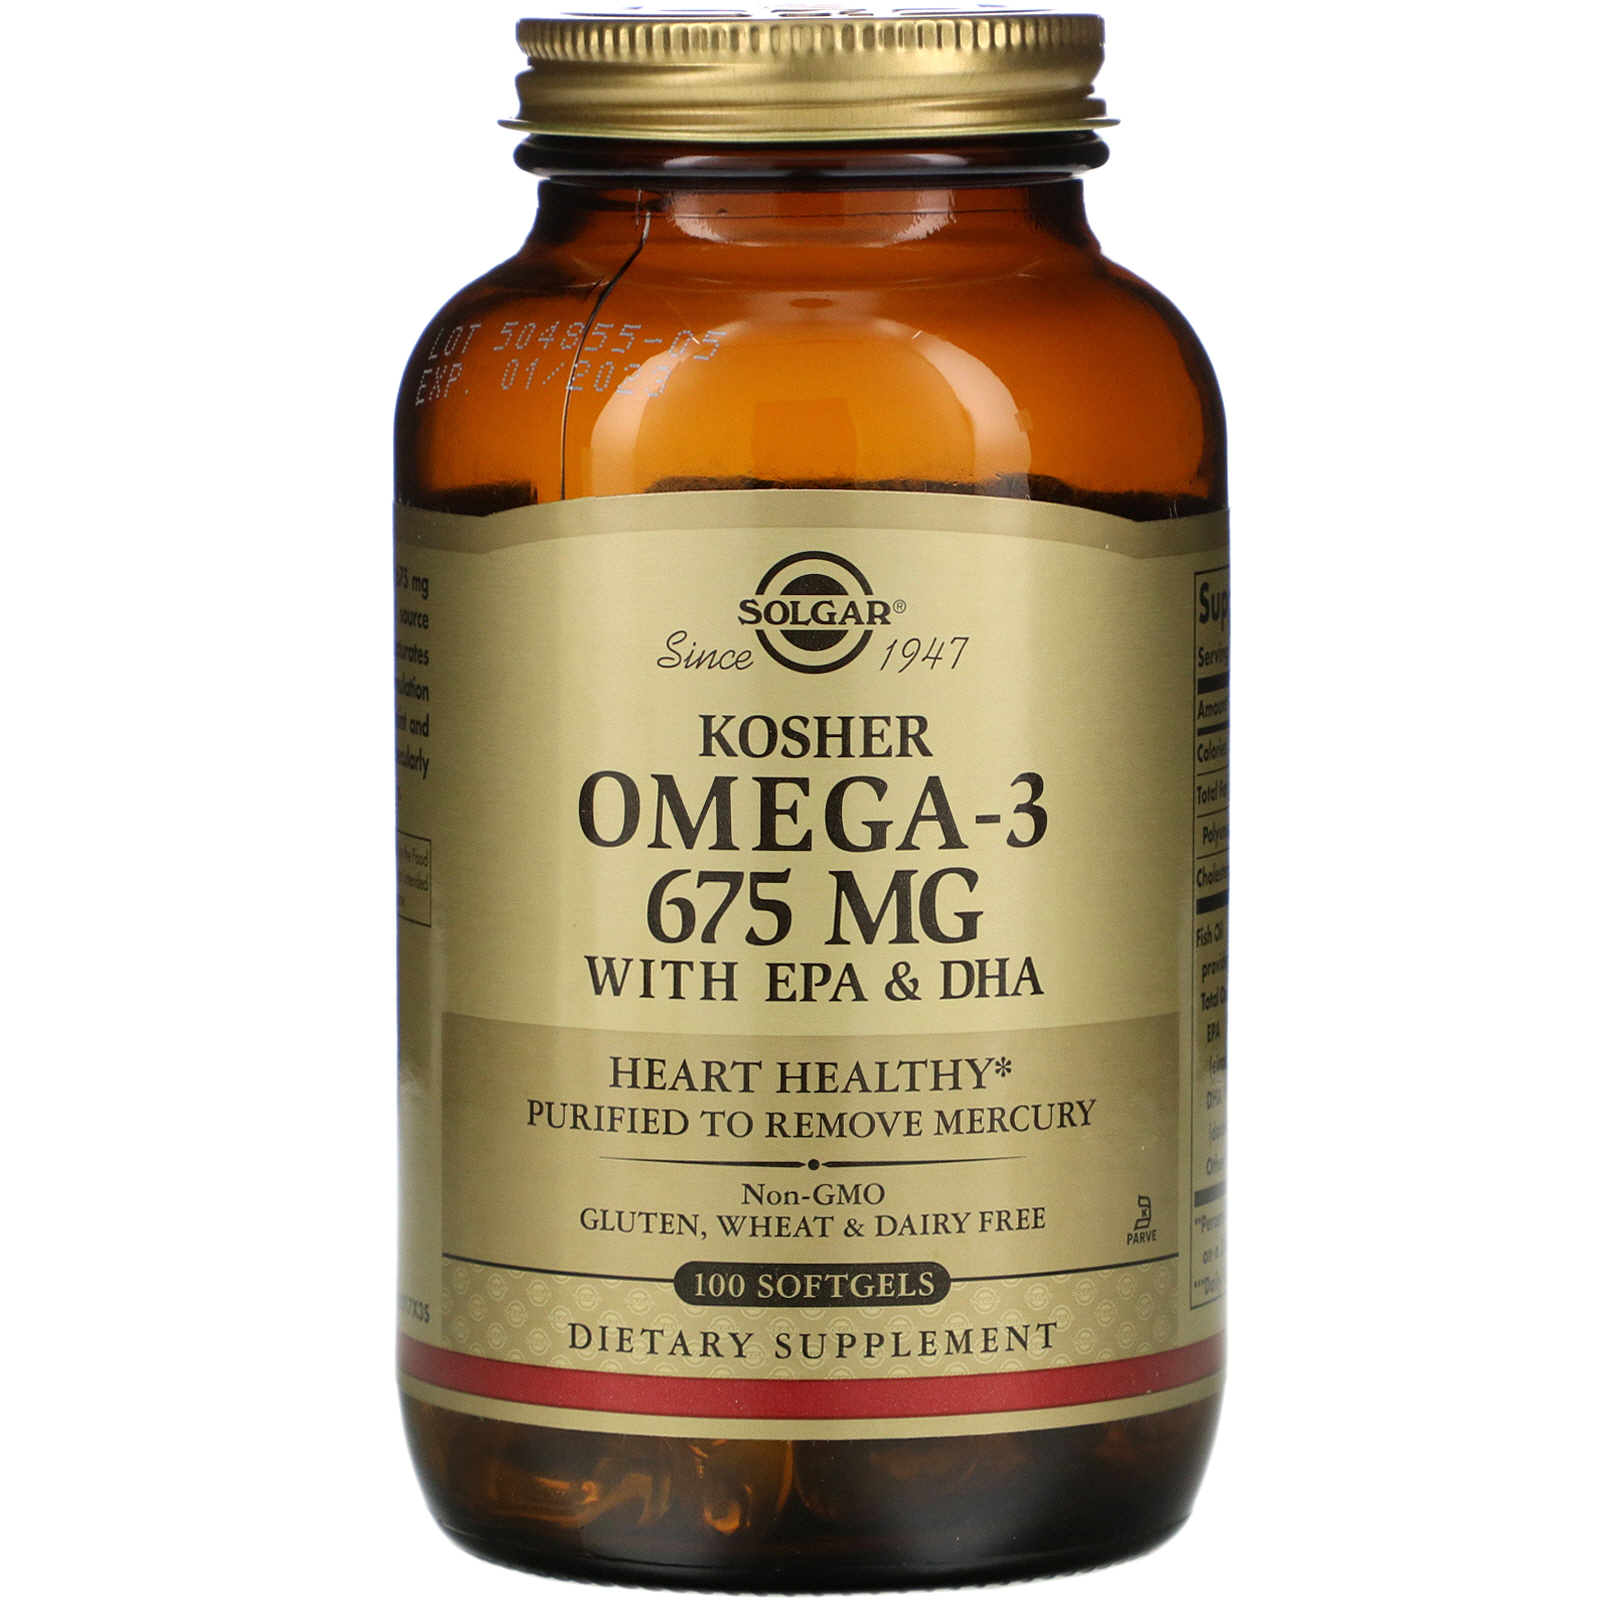 Gyógyszerként is használható az omega-3 – Lenyomja a magas vérzsírszintet - Egészség | Femina